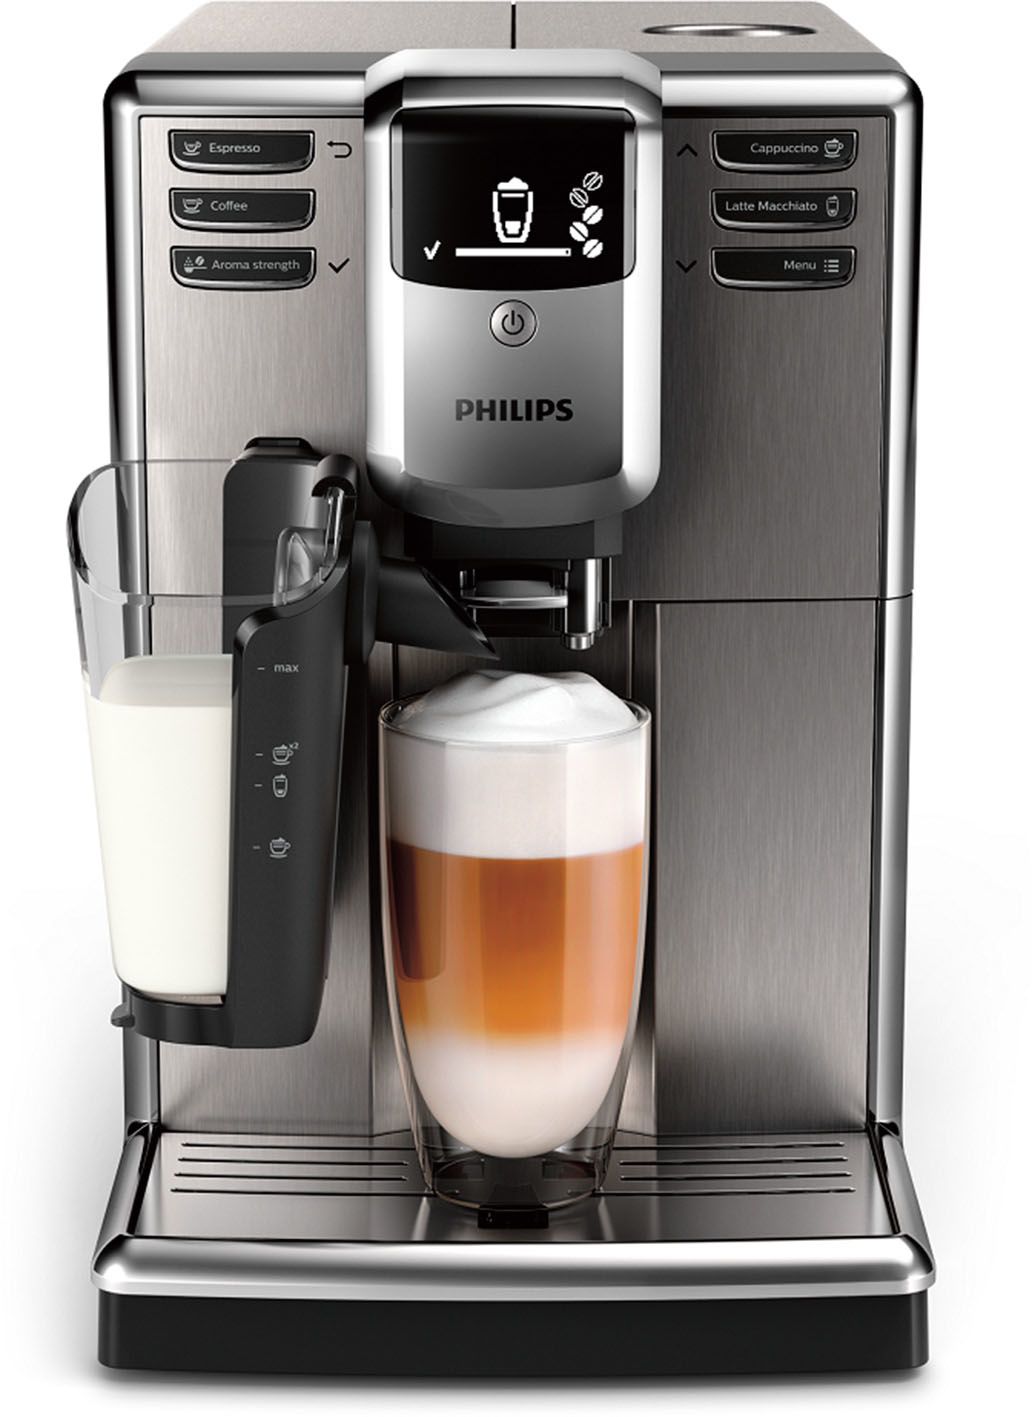 Automatický kávovar Philips 500 LatteGo připraví snadno a rychle šest lahodných kávových nápojů z čerstvých kávových zrn. Součástí kávovaru je vysokorychlostní napěňovač mléka. Cena 23 990 Kč.